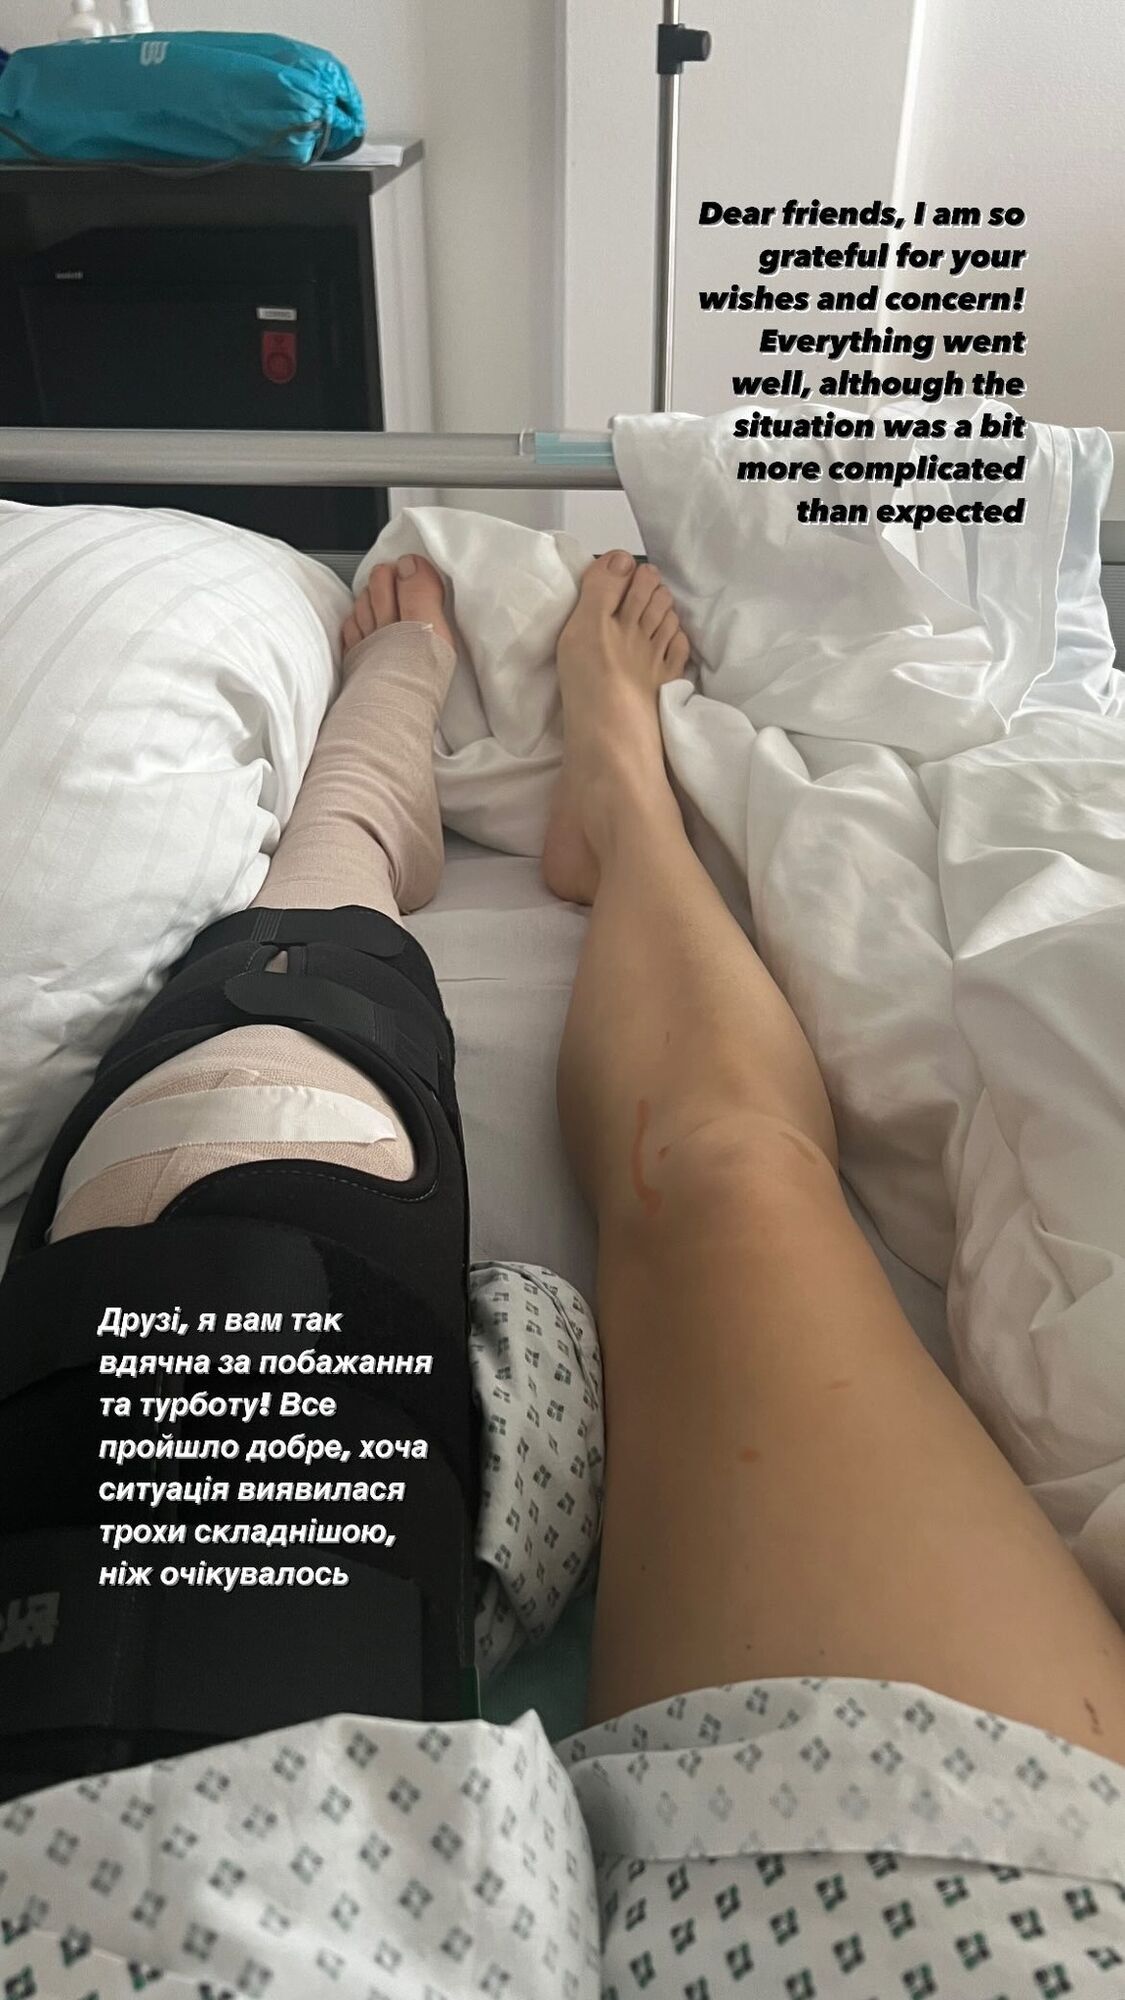 "Ситуація виявилася складнішою": Олена Шоптенко показала перше фото після операції та розповіла про самопочуття